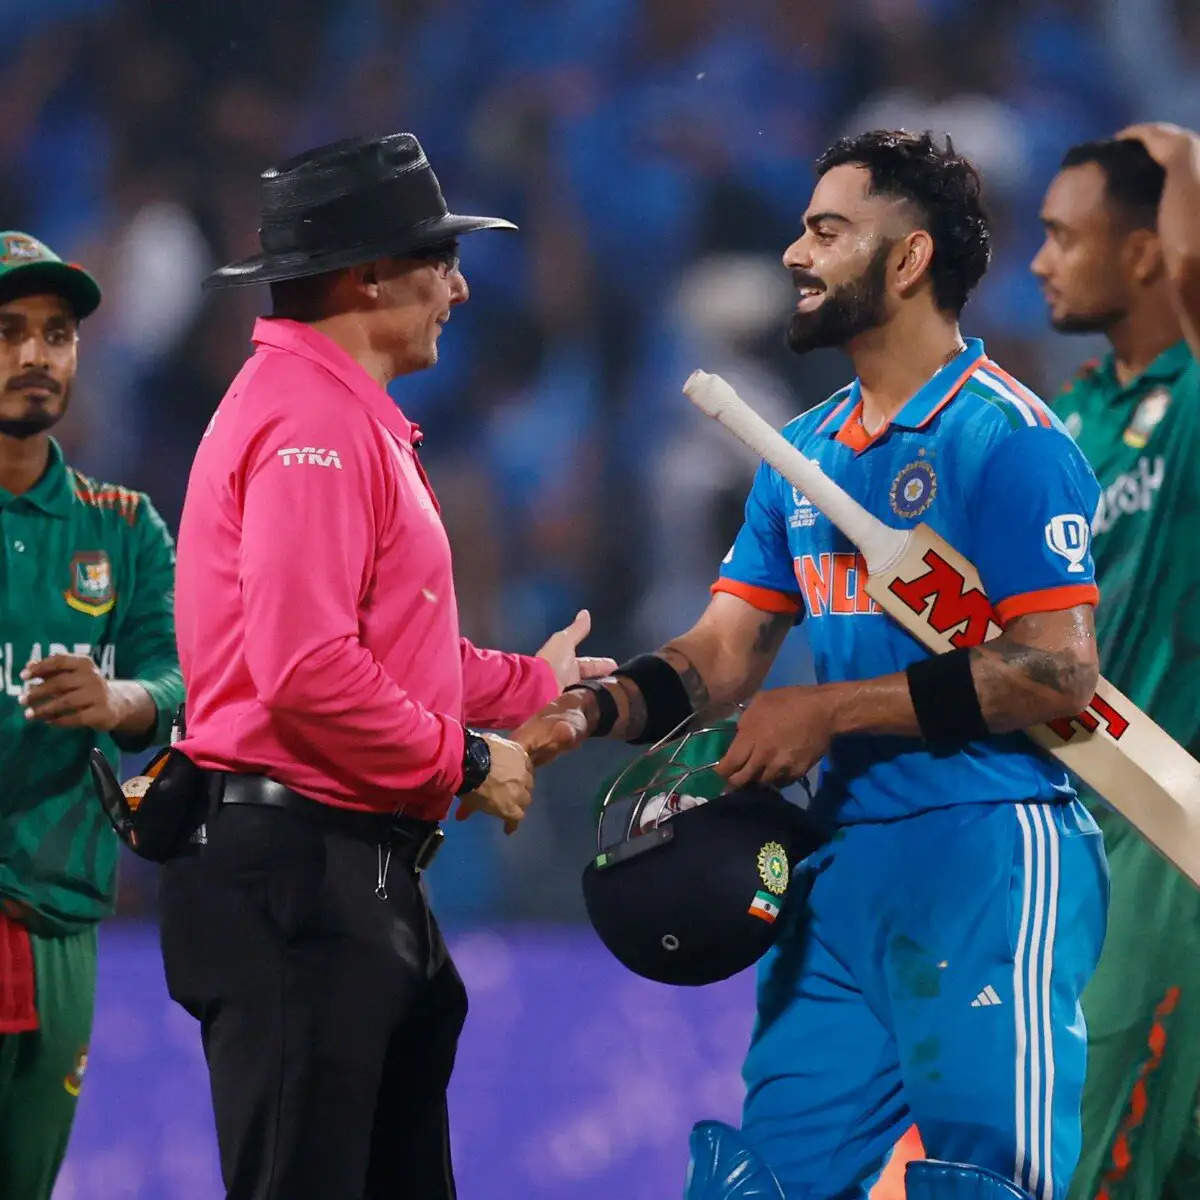 पुणे के क्रिकेट स्टेडियम में एक रोमांचक मुकाबले में, भारत और बांग्लादेश के बीच बहुप्रतीक्षित क्रिकेट विश्व कप 2023 मैच गुरुवार को हुआ, जिसमें प्रशंसक अपनी सीटों पर खड़े हो गए। भारत ने कांटे की टक्कर में विजयी होकर टूर्नामेंट में लगातार चौथी जीत हासिल की। लेकिन जश्न के बीच, सोशल मीडिया पर एक विवाद छिड़ गया है, जो विराट कोहली की उल्लेखनीय उपलब्धि - एक दिवसीय अंतरराष्ट्रीय क्रिकेट में उनका 48 वां शतक - पर केंद्रित है।